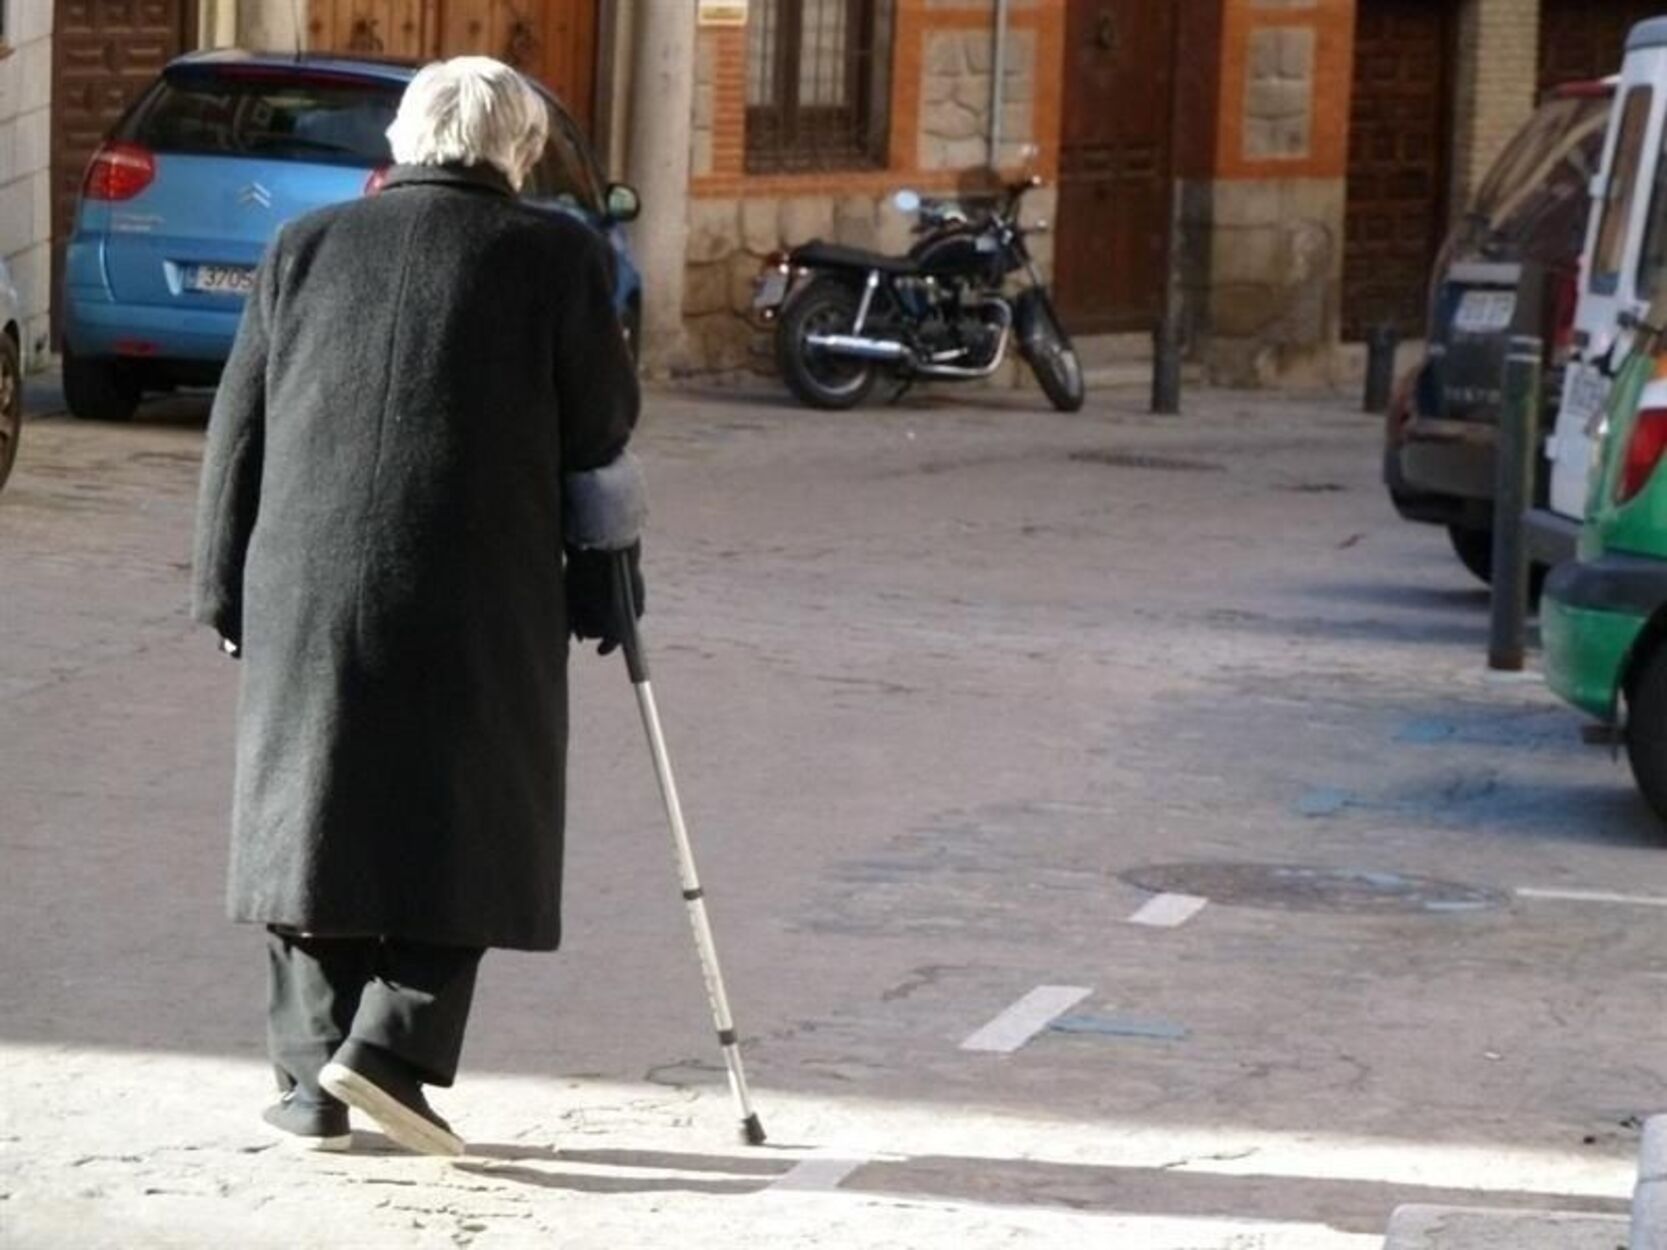 Pensión de viudedad: hasta 314 euros al mes de diferencia según la comunidad autónoma